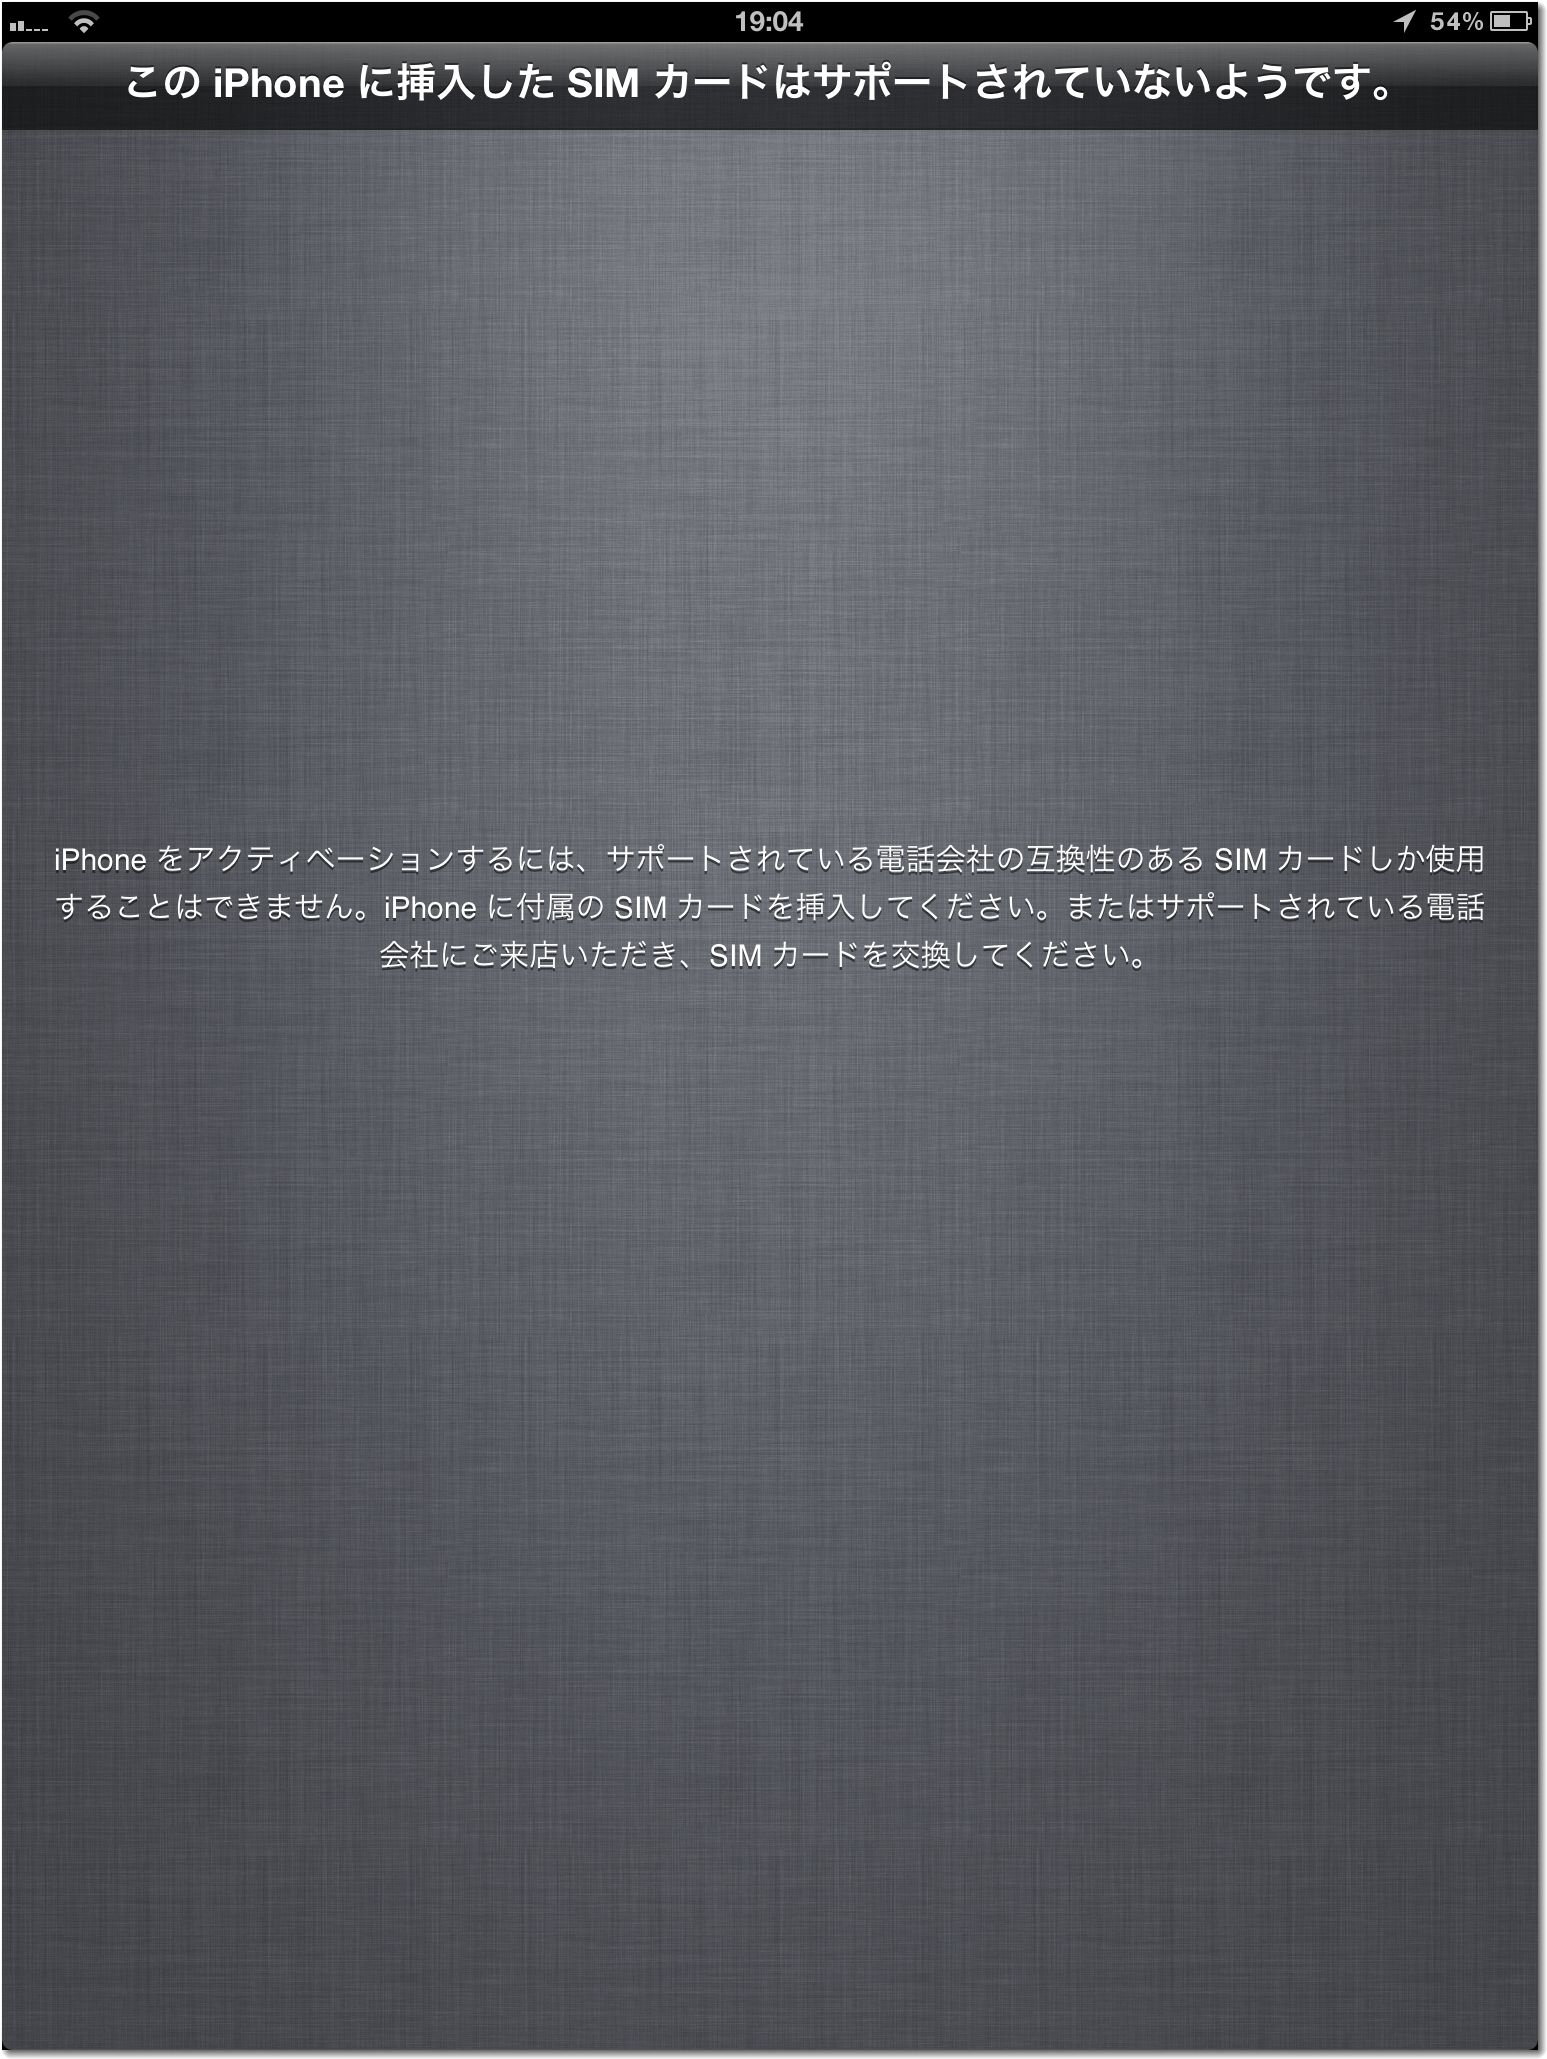 iPad_HeiCard04_サポート外.jpg